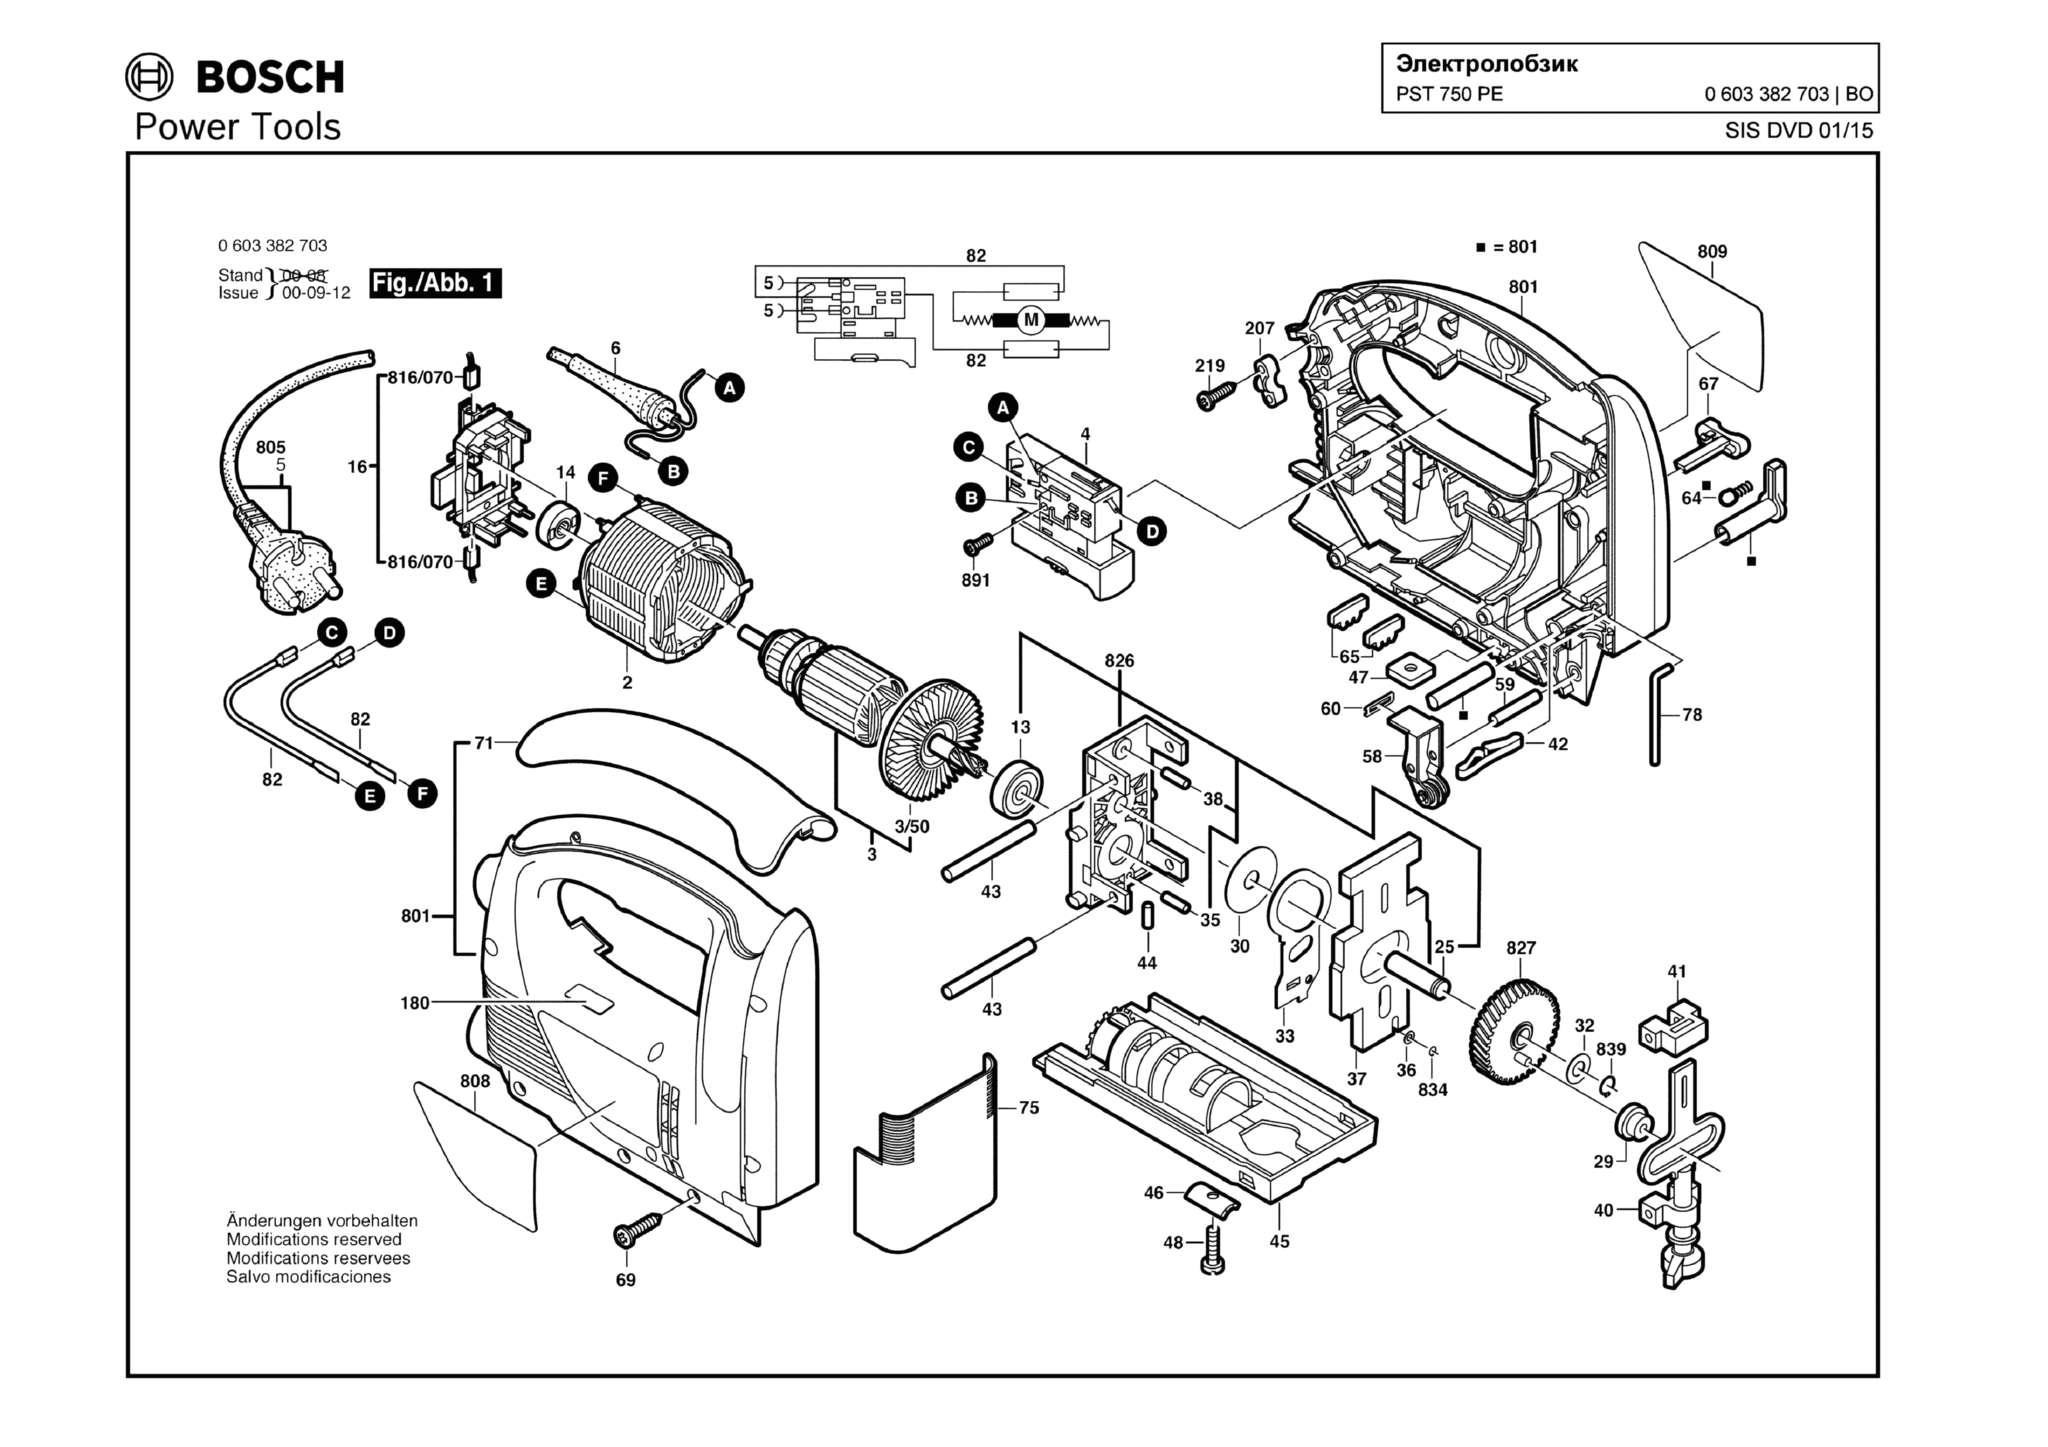 Запчасти, схема и деталировка Bosch PST 750 PE (ТИП 0603382703)